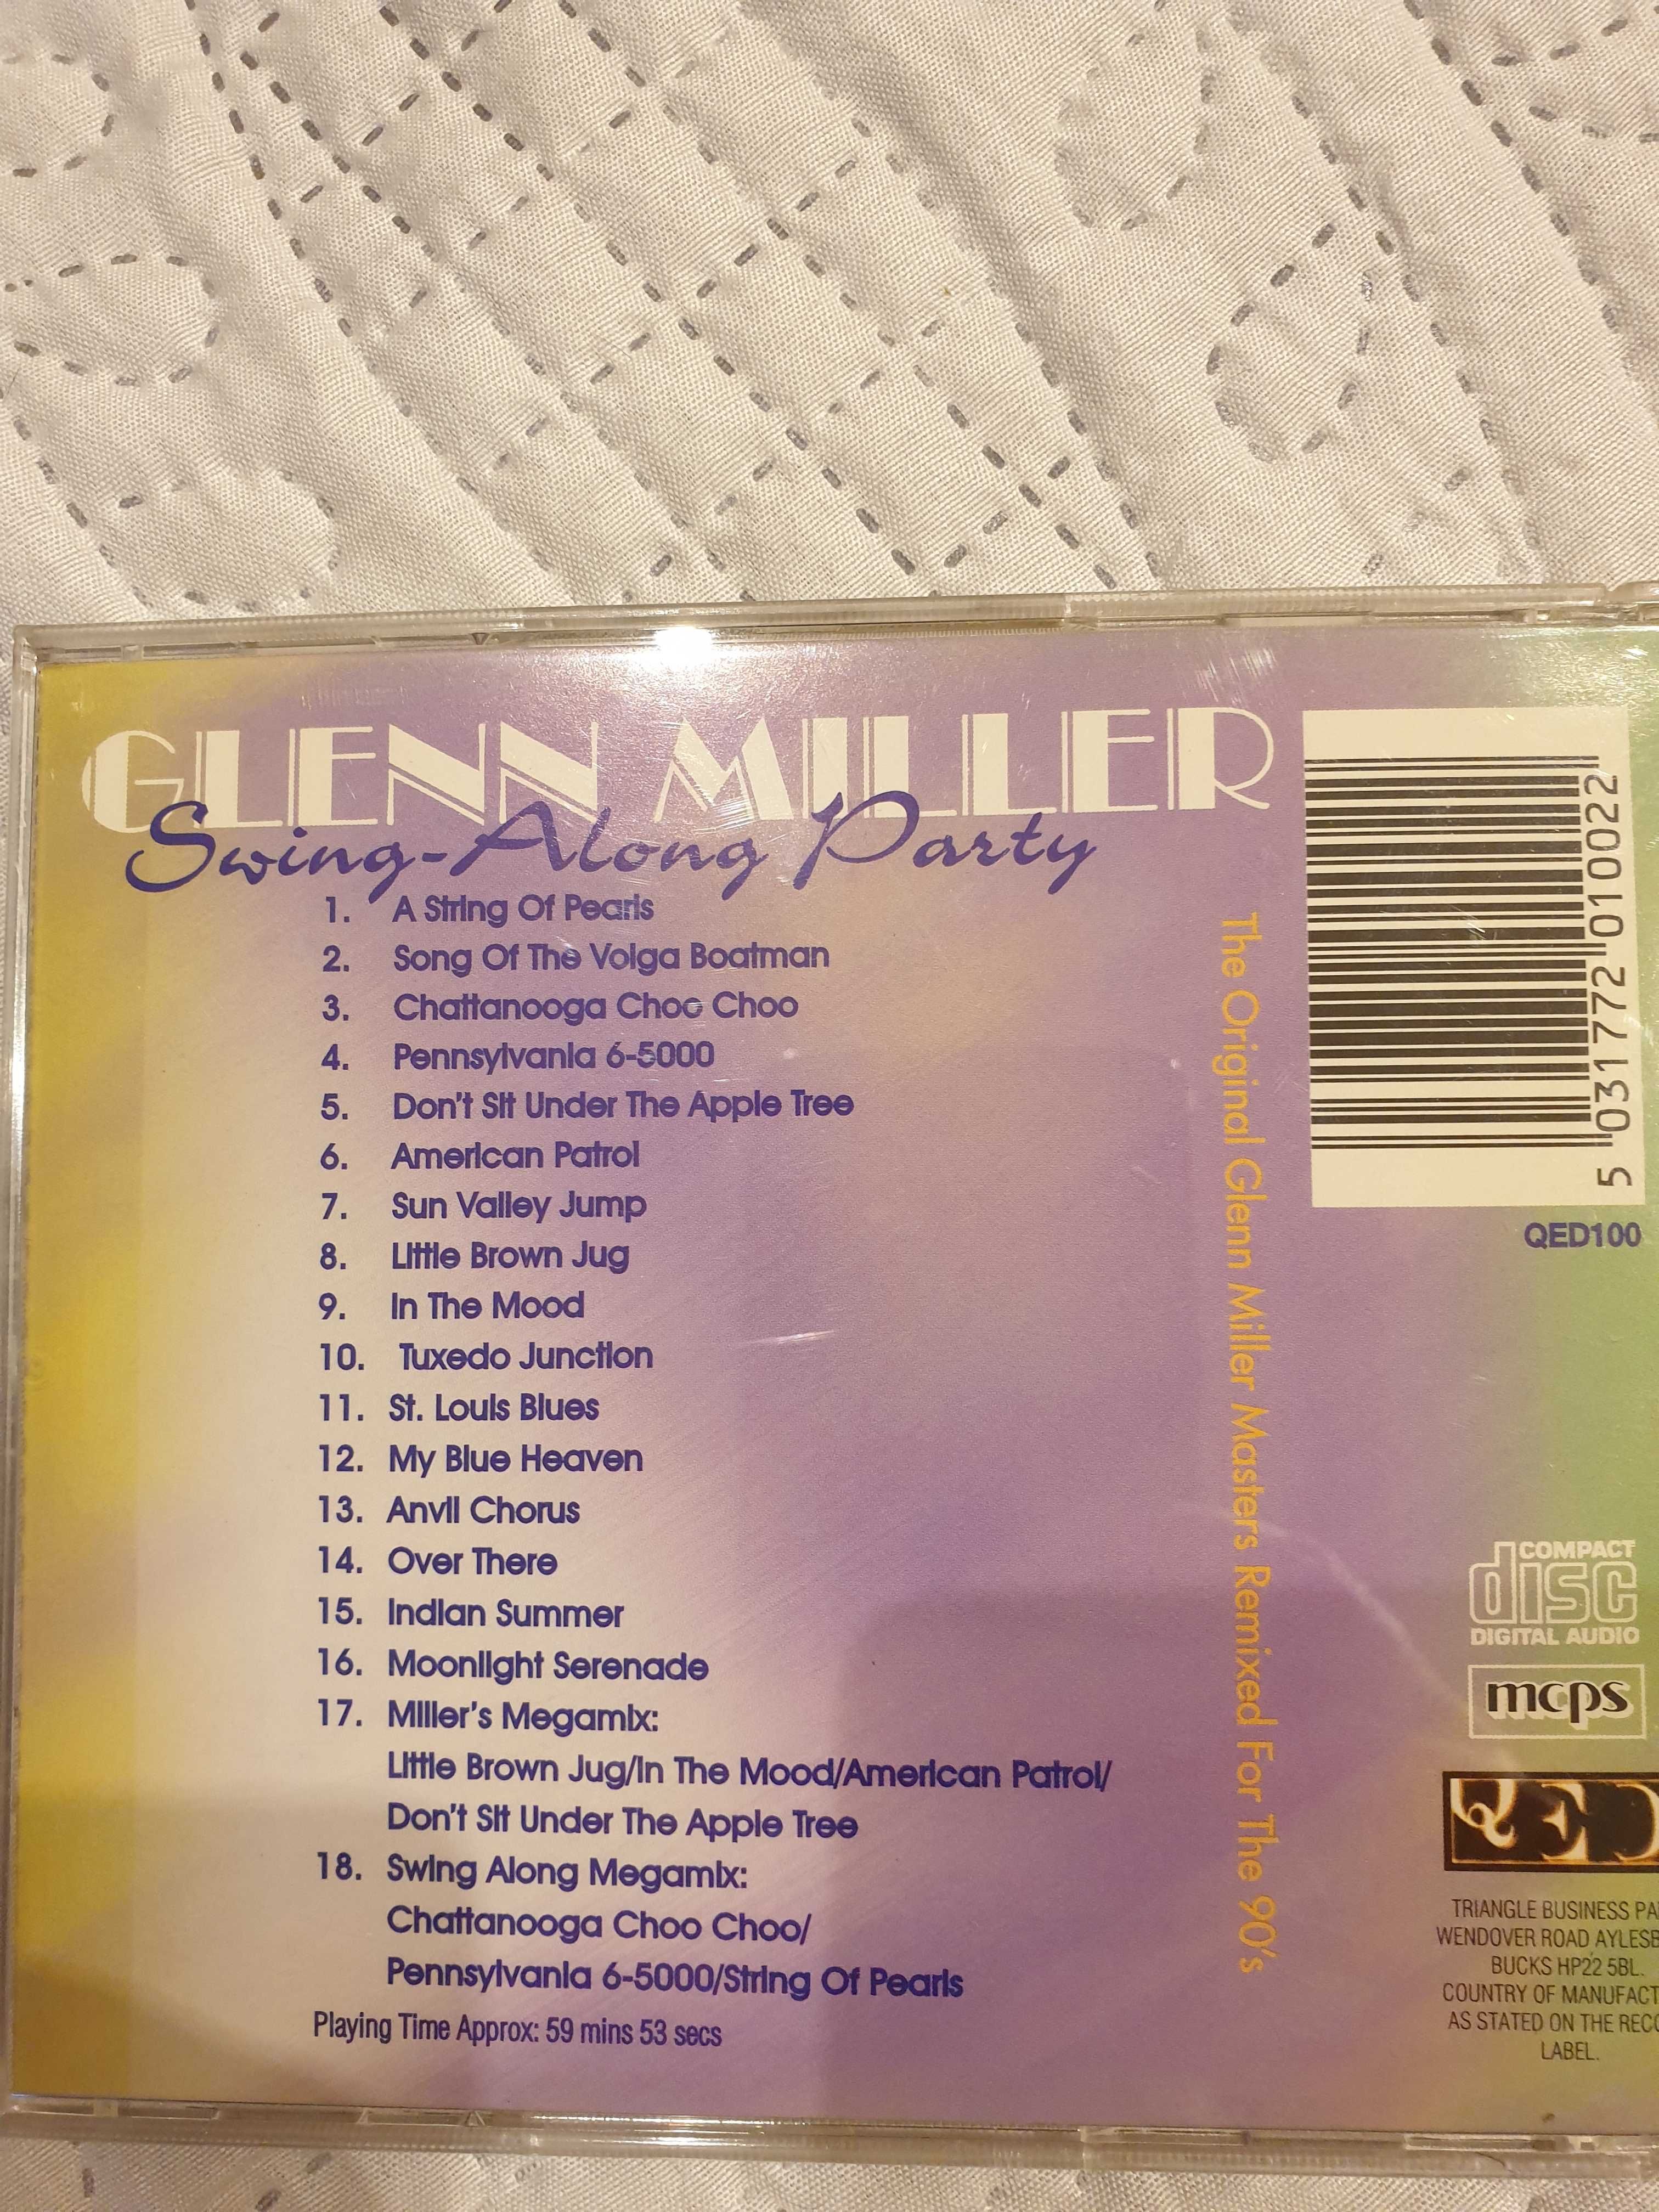 Glenn Miller "Swing-Along Party"